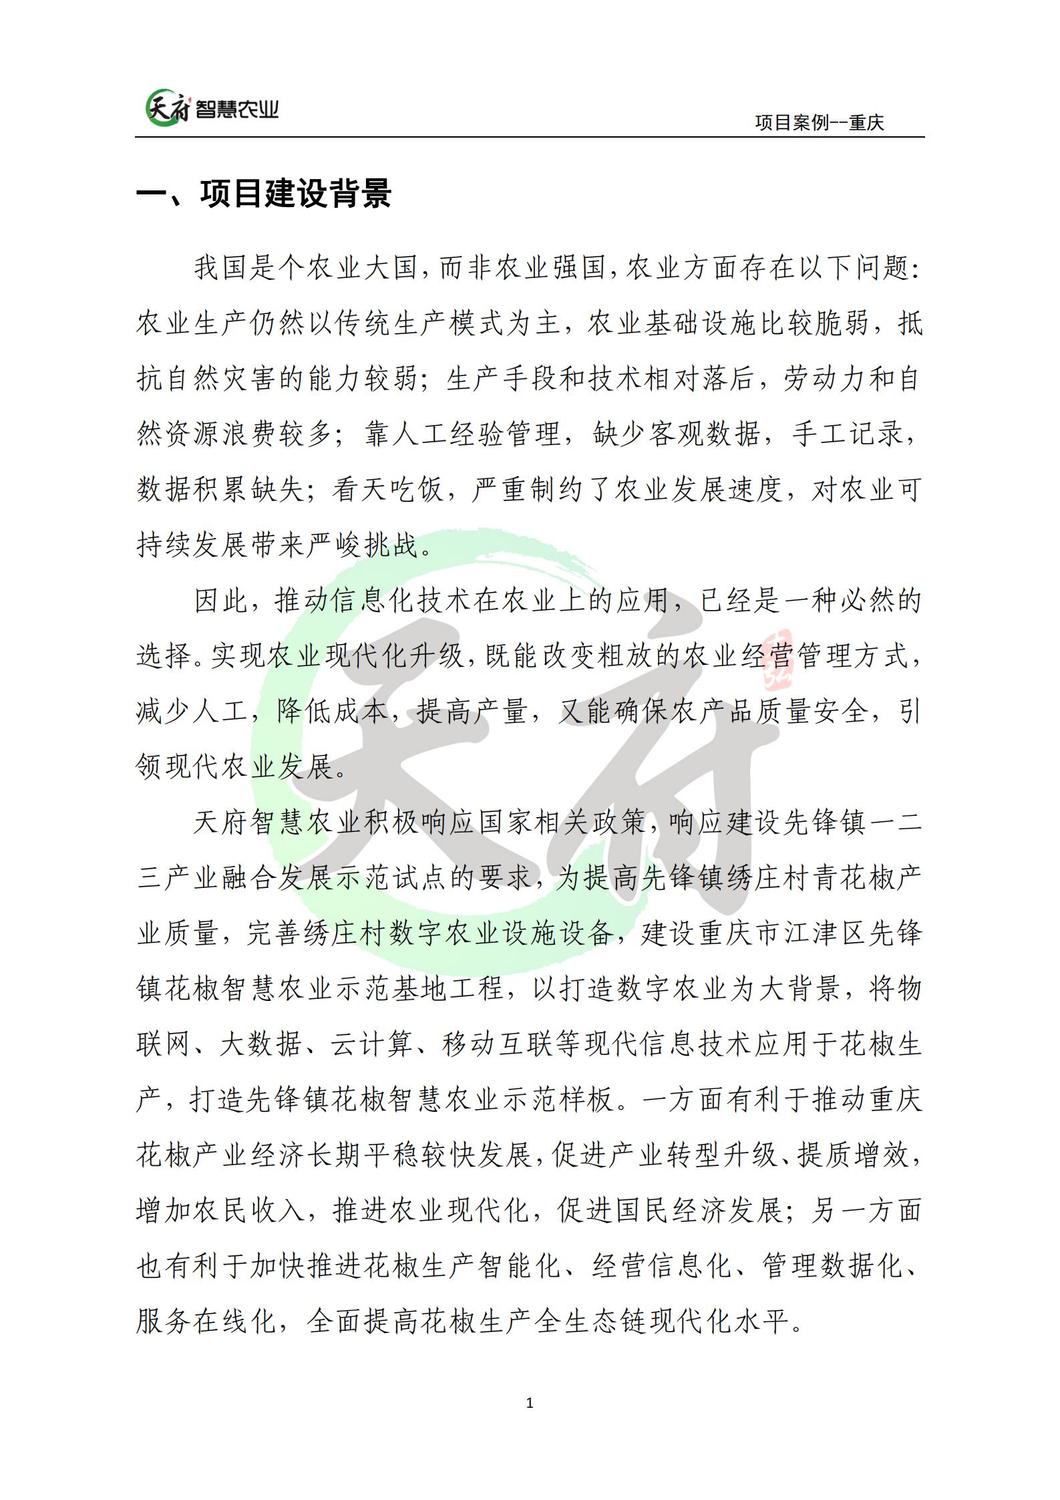 案例7：重庆数字农业花椒示范基地_01.jpg